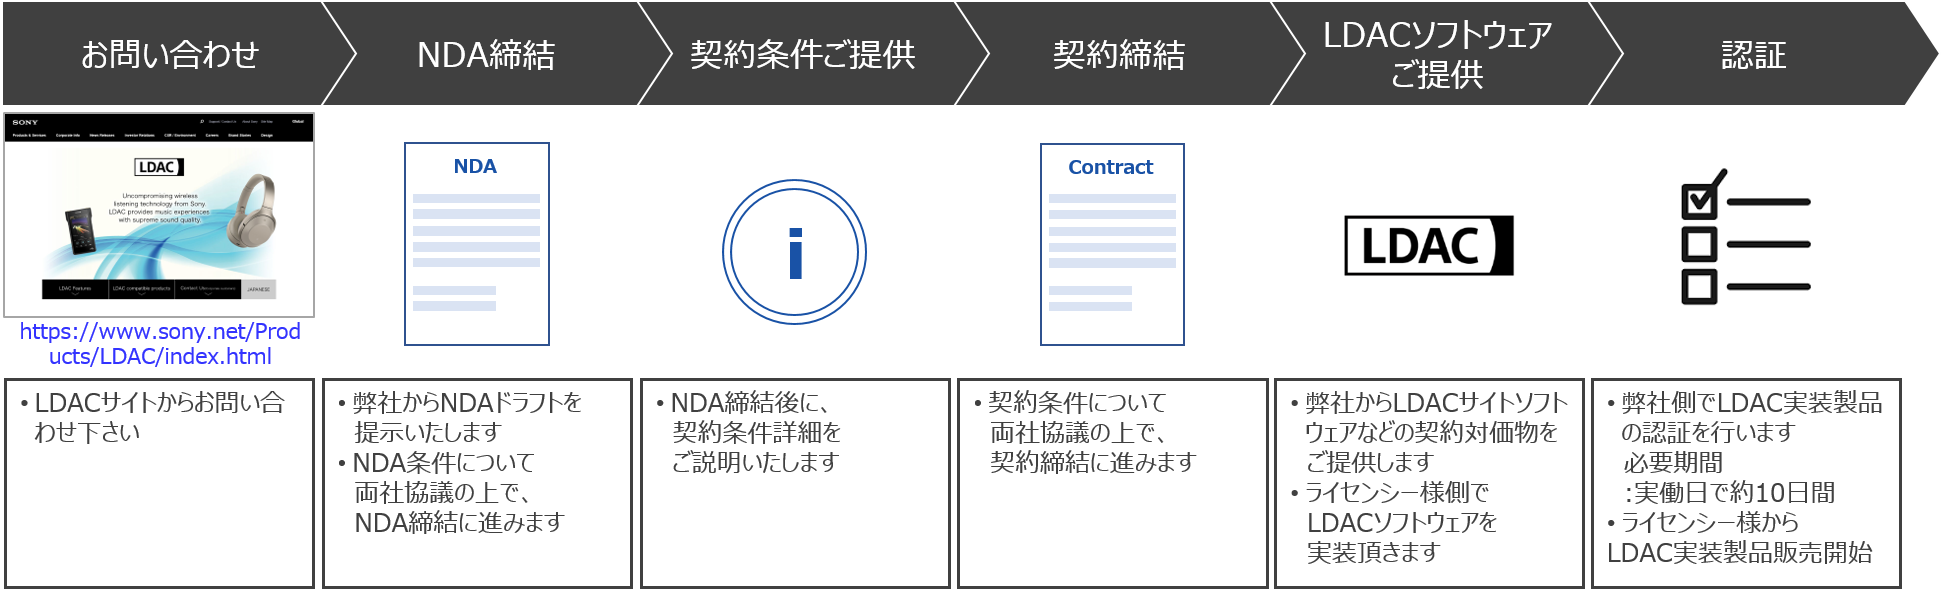 お問合せ→NDA締結→契約条件ご提供→契約締結→LDACソフトウェア→認証